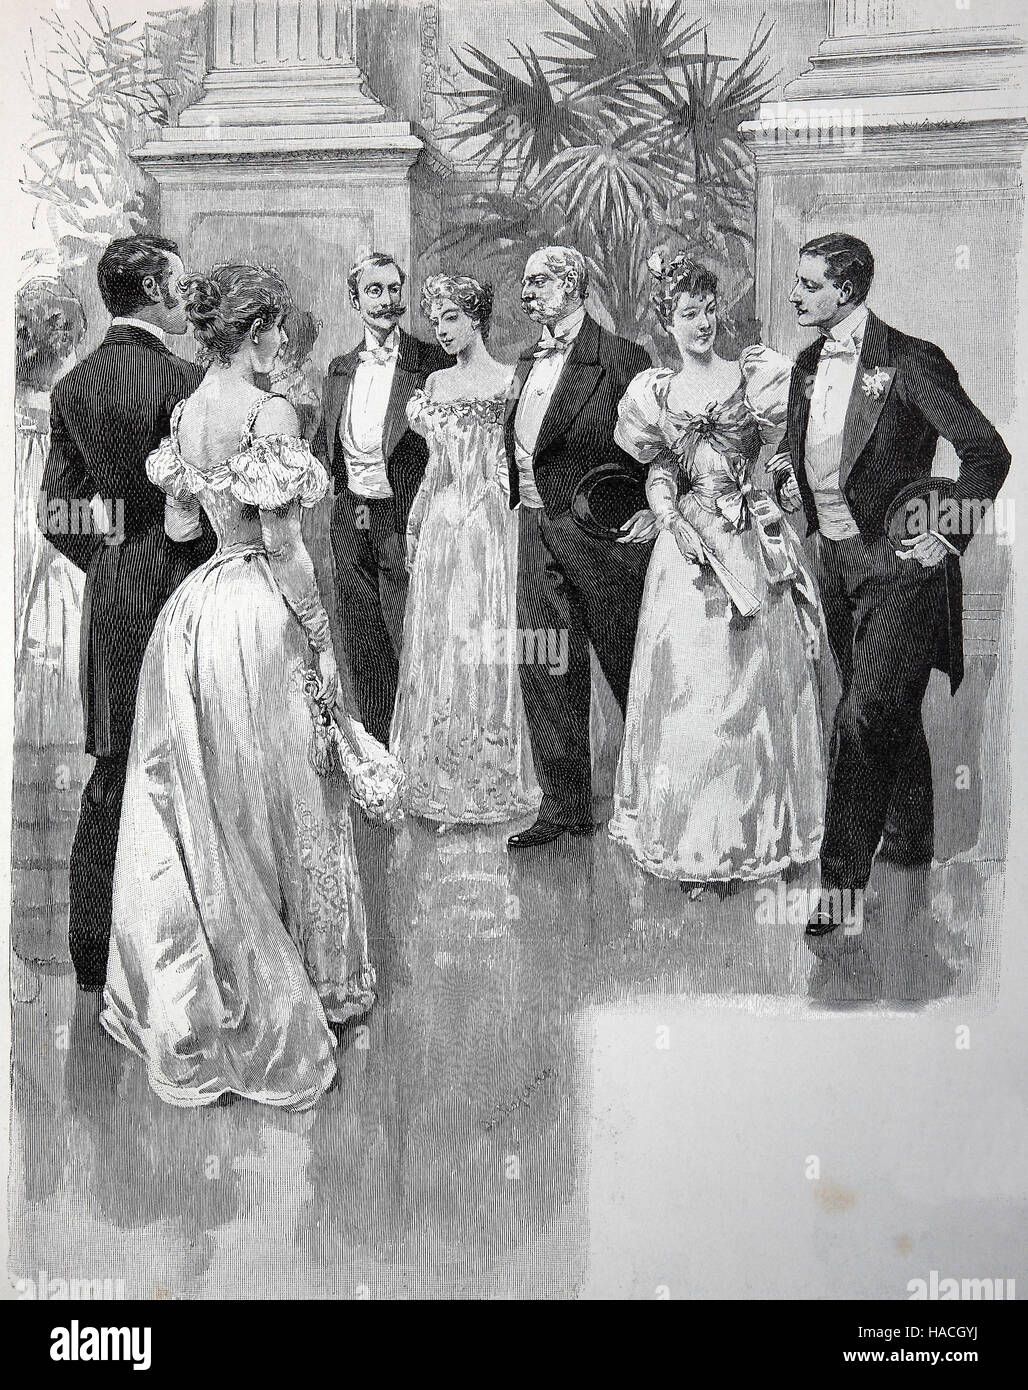 Contredance, country dance est tout d'un grand nombre de danses sociales des îles britanniques dont les couples danser ensemble dans une figure ou un ensemble, 1880, gravure sur bois, l'illustration historique Banque D'Images